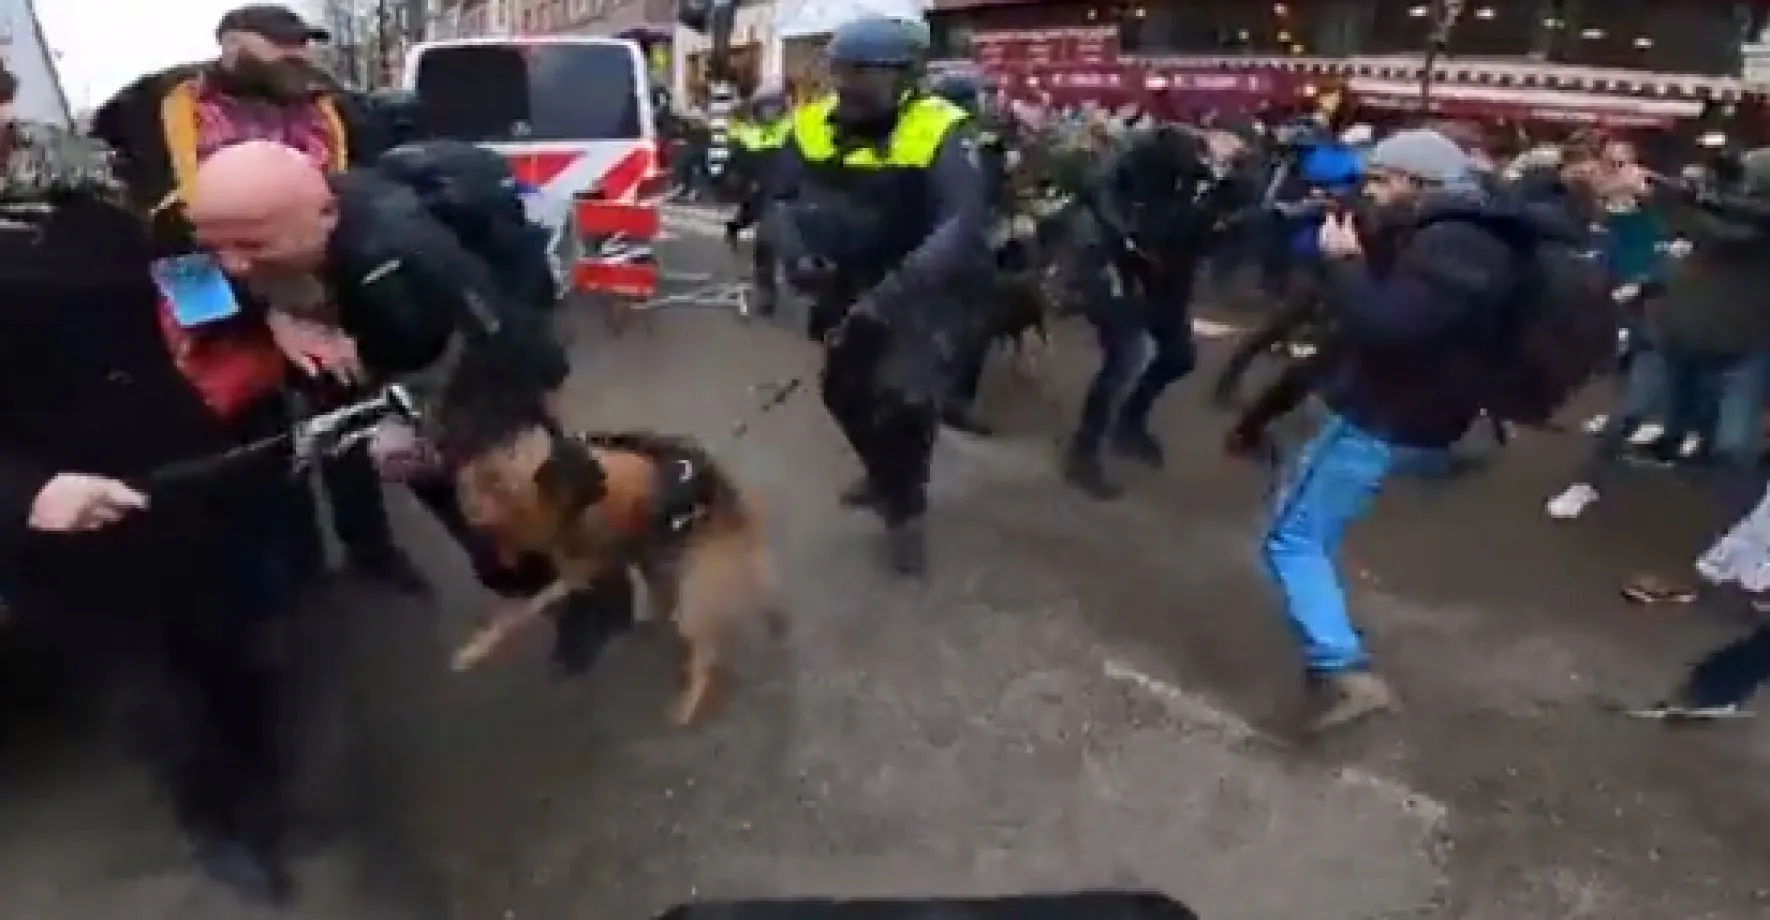 Tvrdý zásah s obušky a psy. 10 000 lidí protestovalo proti opatřením, pak zasáhla policie